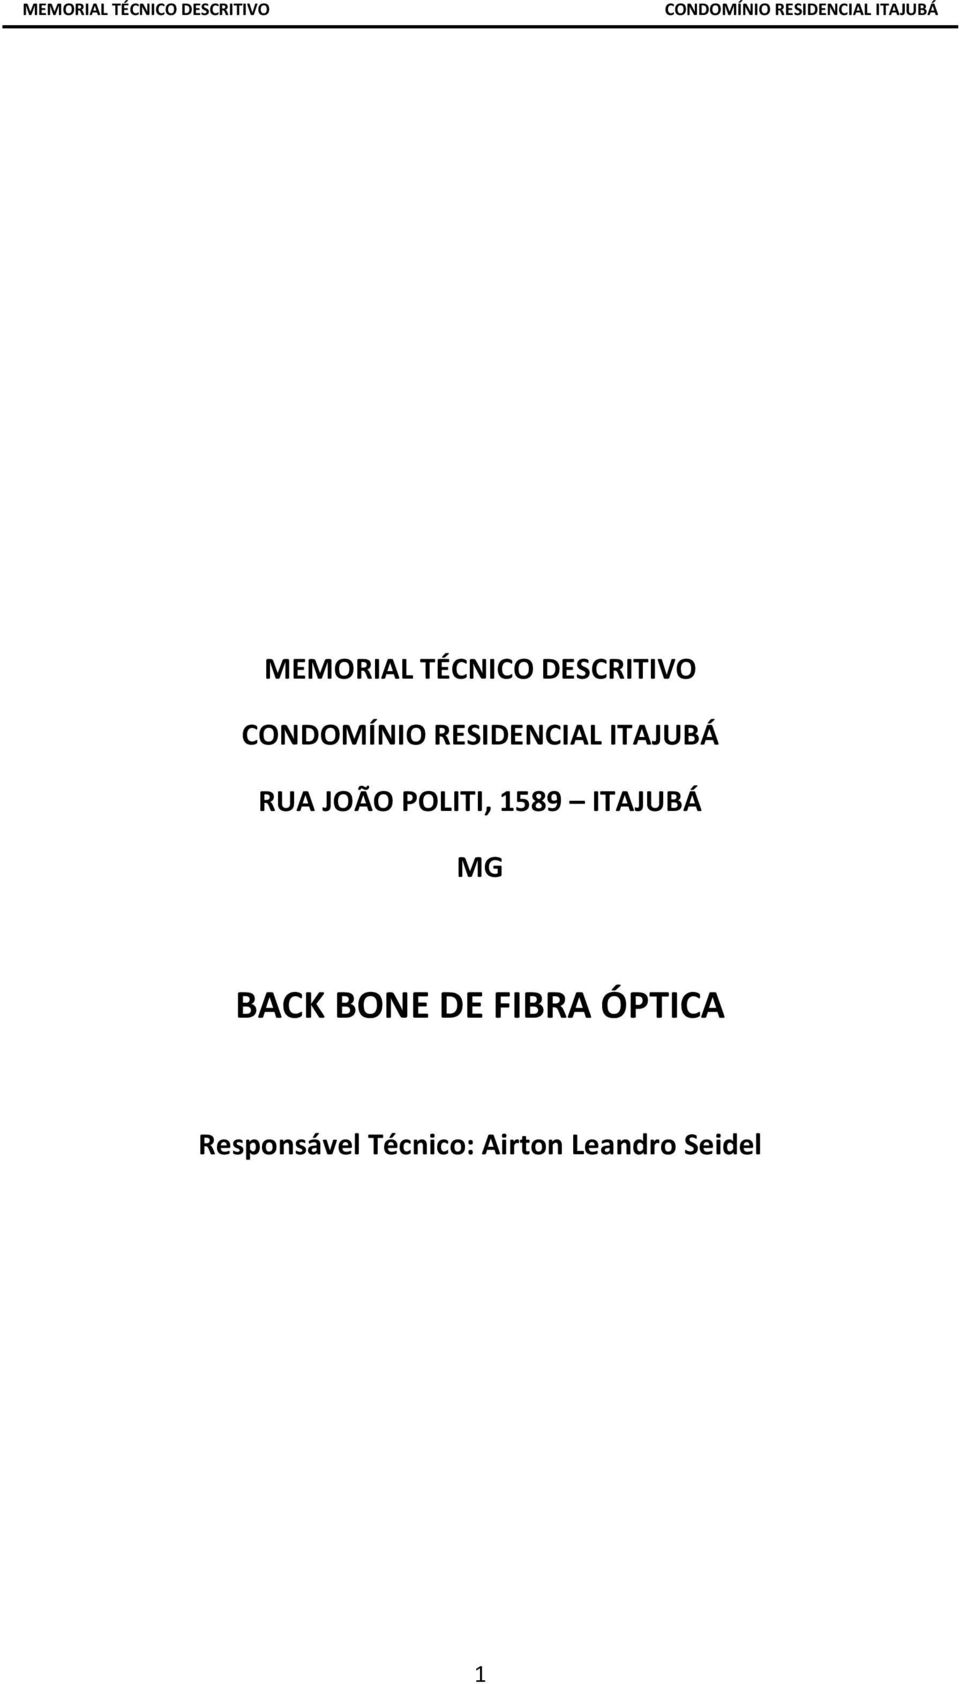 BACK BONE DE FIBRA ÓPTICA